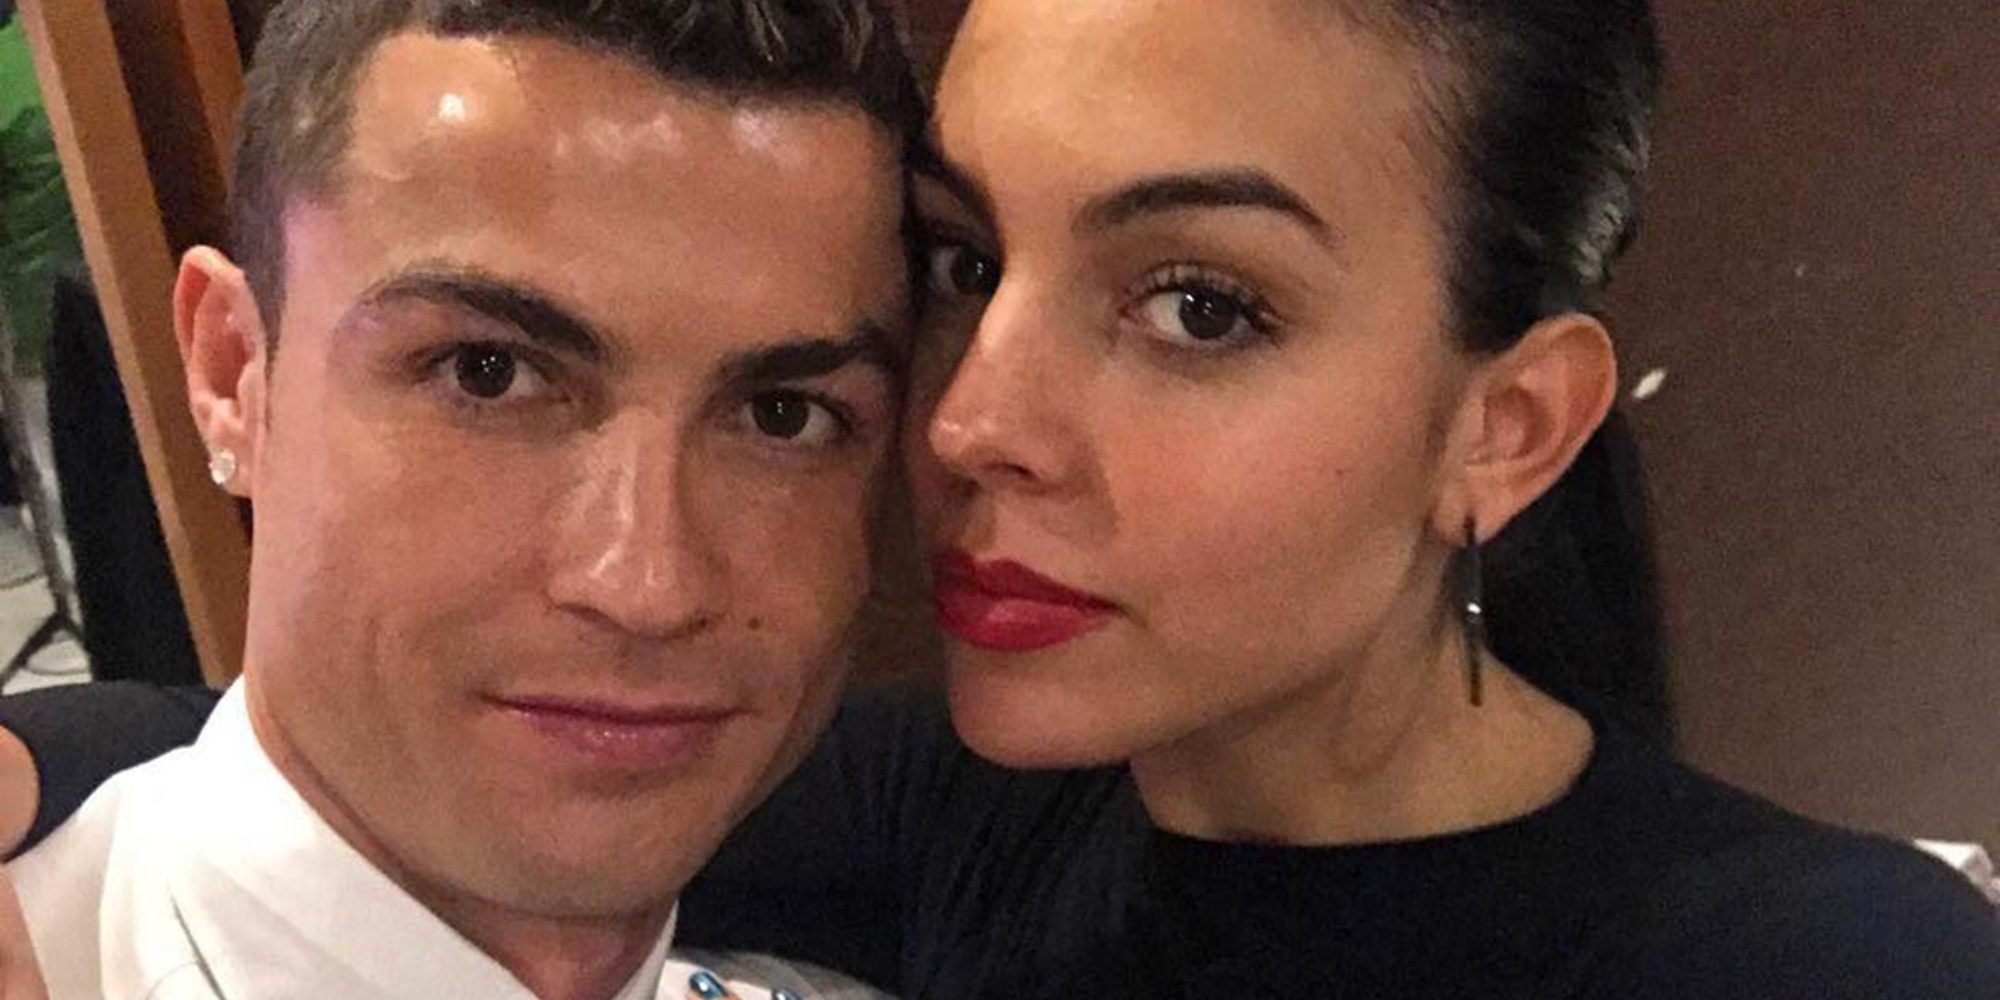 Georgina Rodríguez recuerda y admira los orígenes humildes de Cristiano Ronaldo: "Se me dibuja una sonrisa"